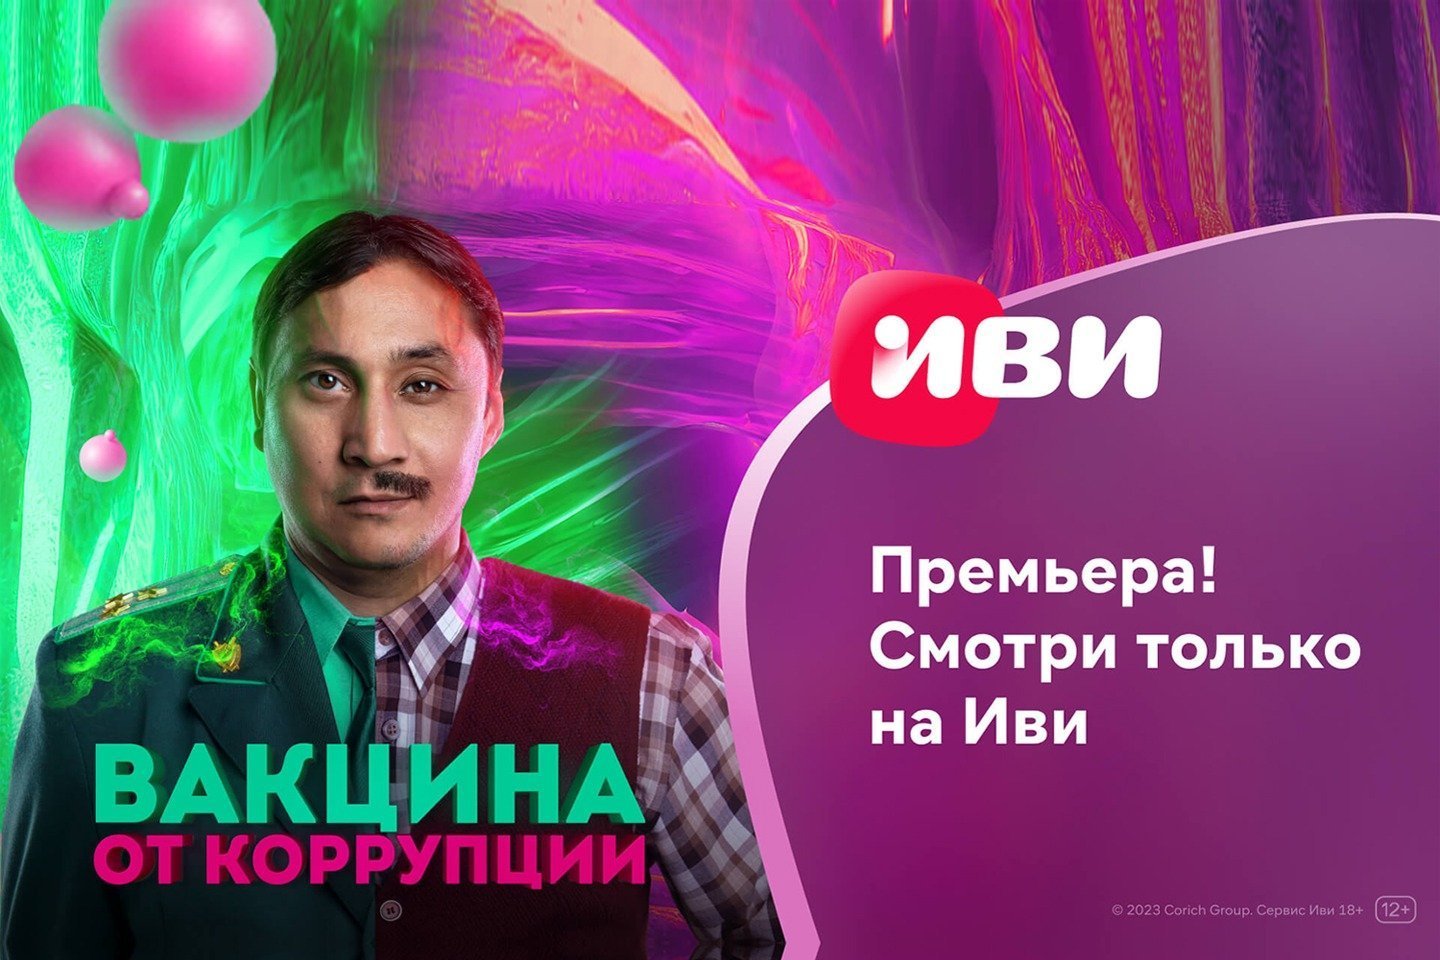 Партнерские материалы / На Иви состоялась онлайн-премьера казахстанской комедии "Вакцина от коррупции"